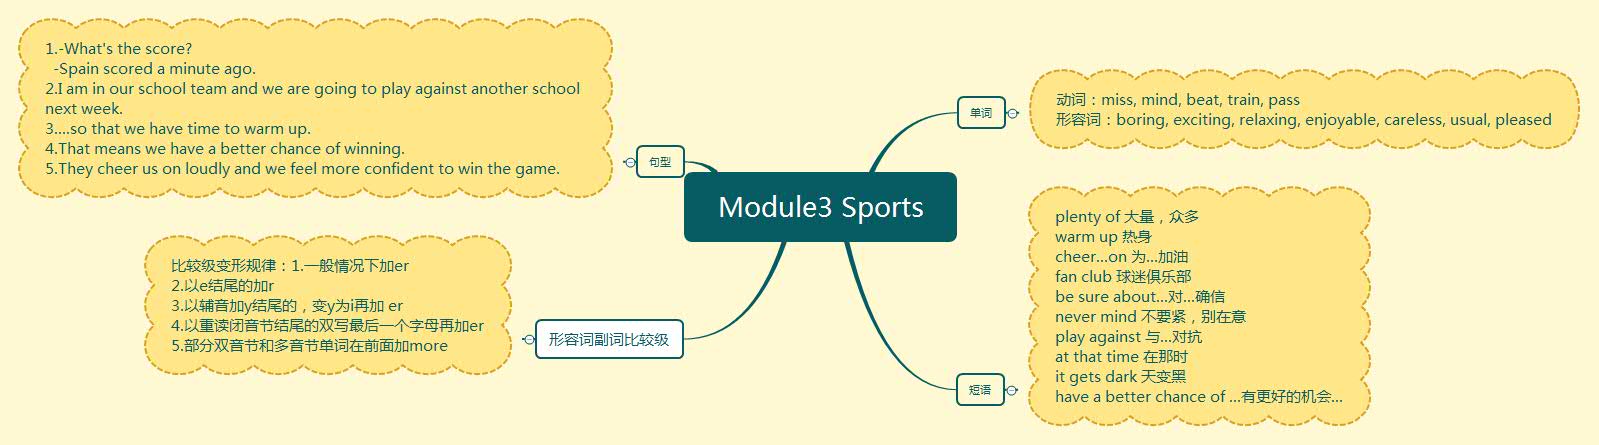 Module3 Sports.jpg